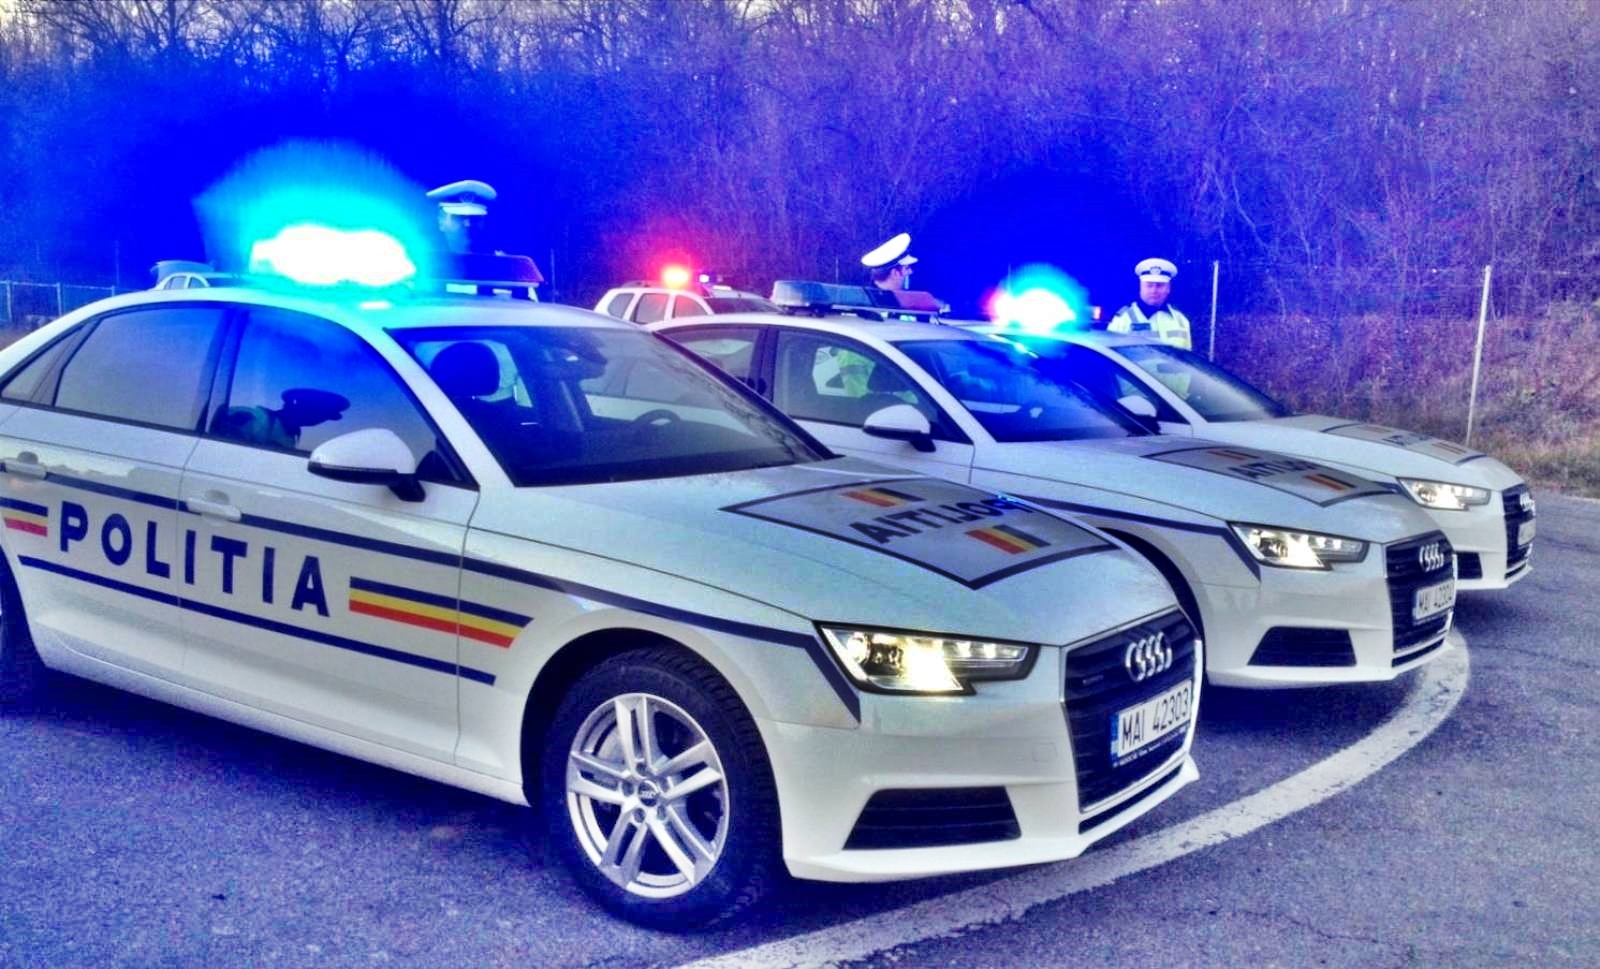 Rumuńska policja ostrzega przed podróżami po Europie